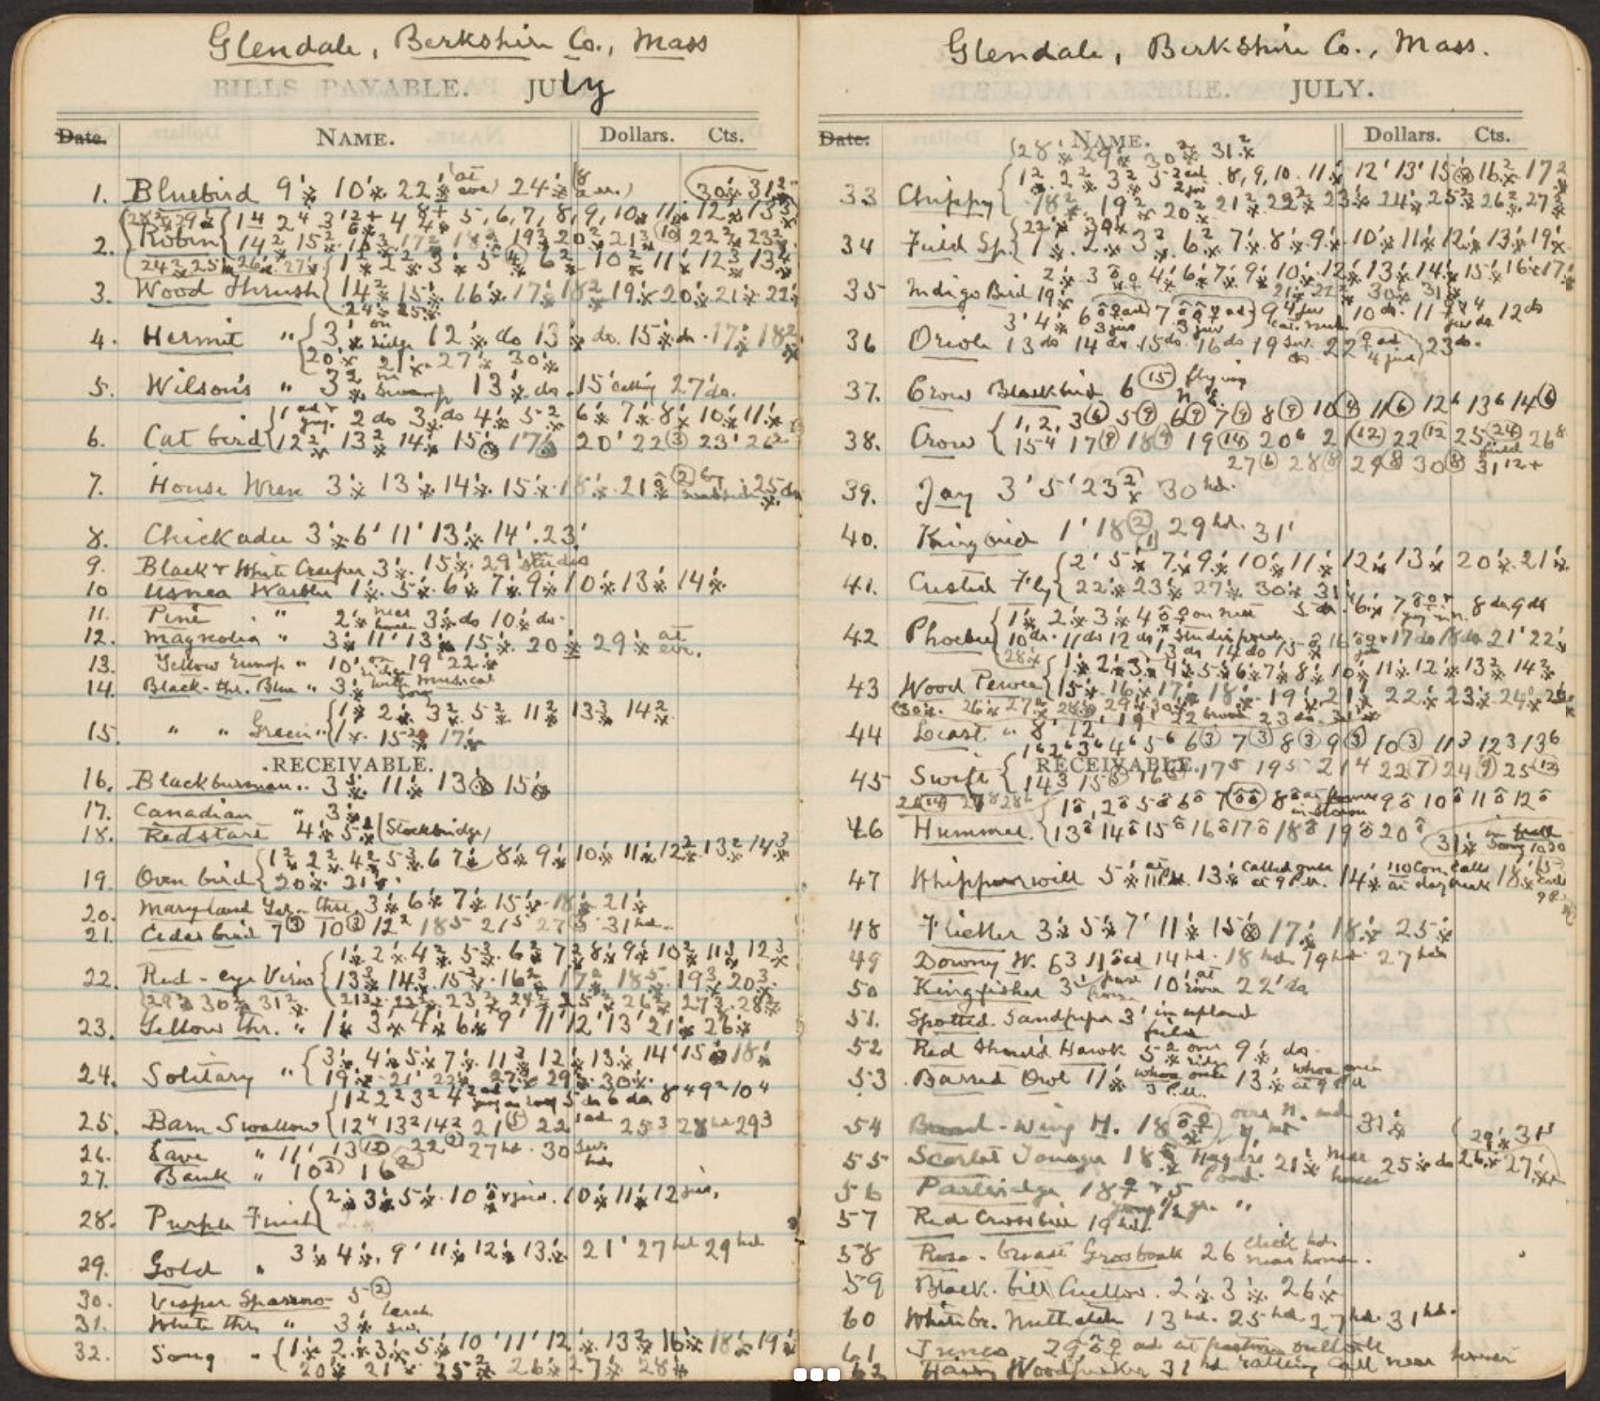 Handwritten list of species observed by William Brewster